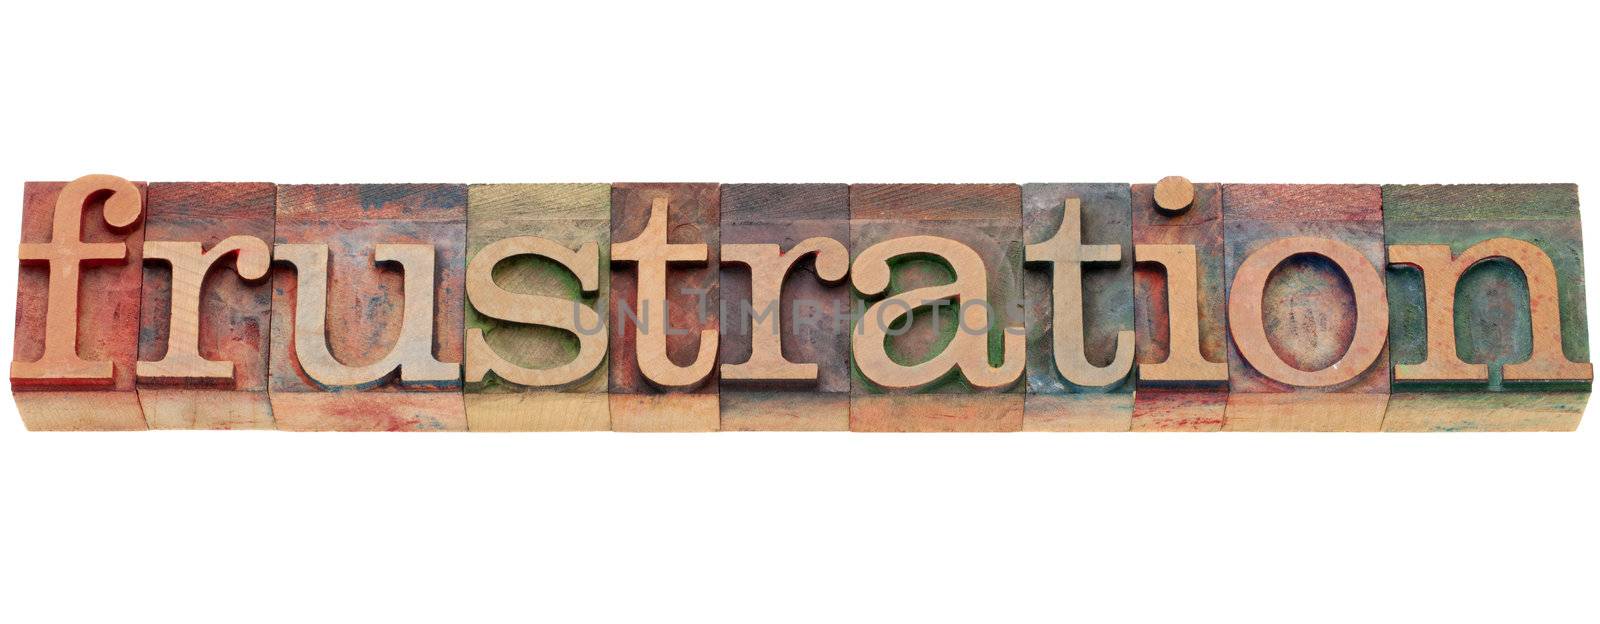 frustration word in letterpress type by PixelsAway